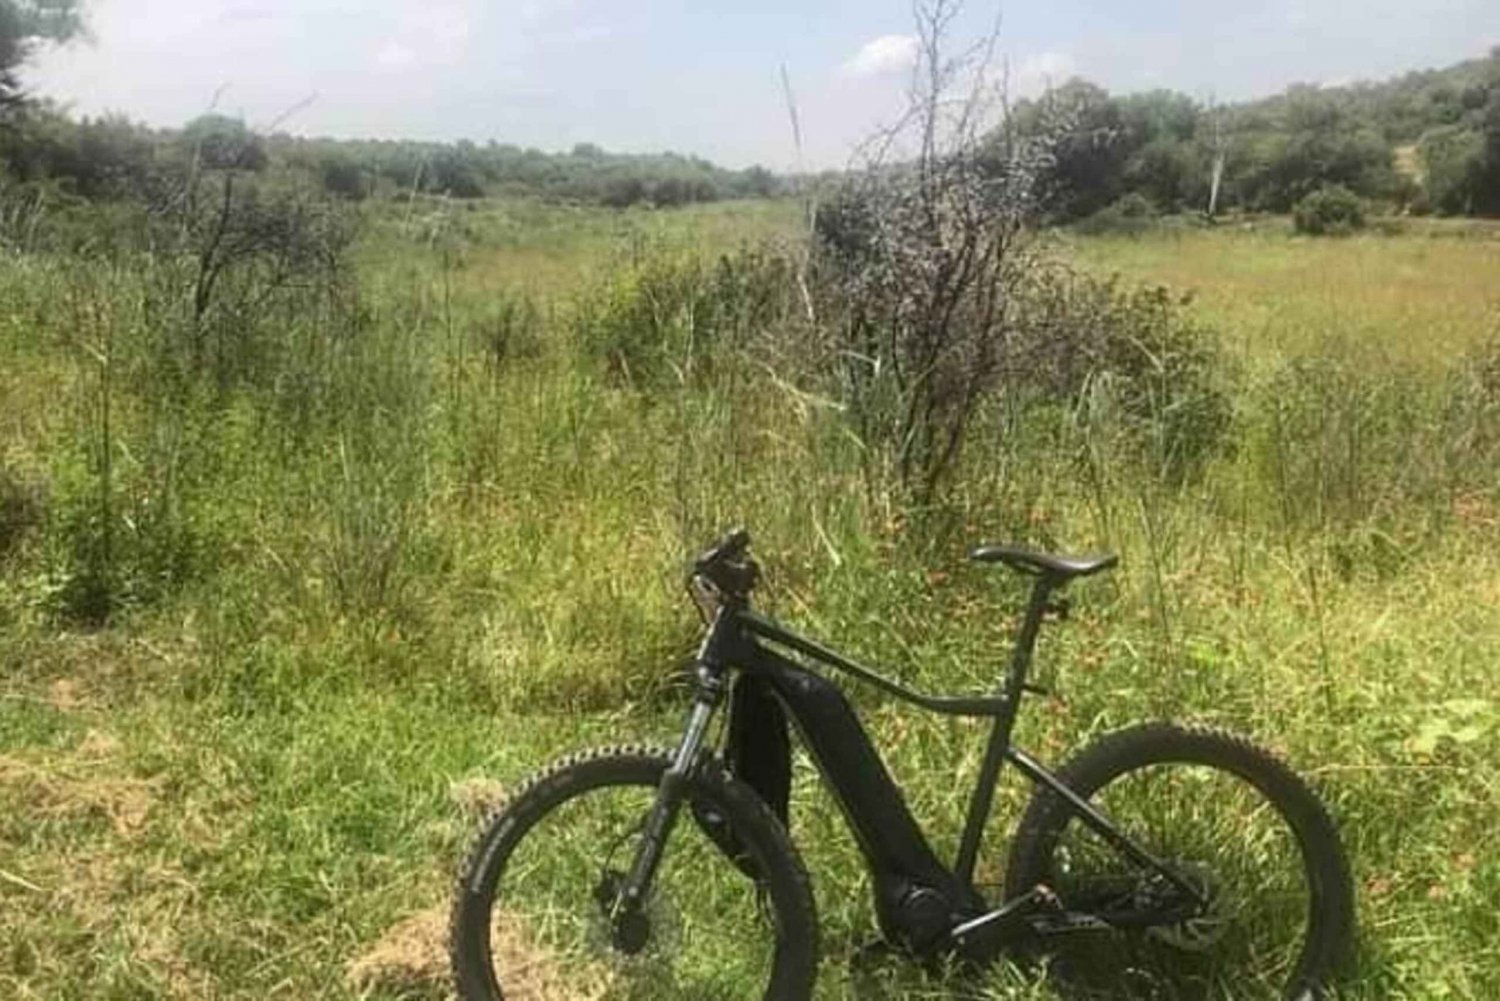 From Pretoria: E-Bike in the wild with game near Jo'burg